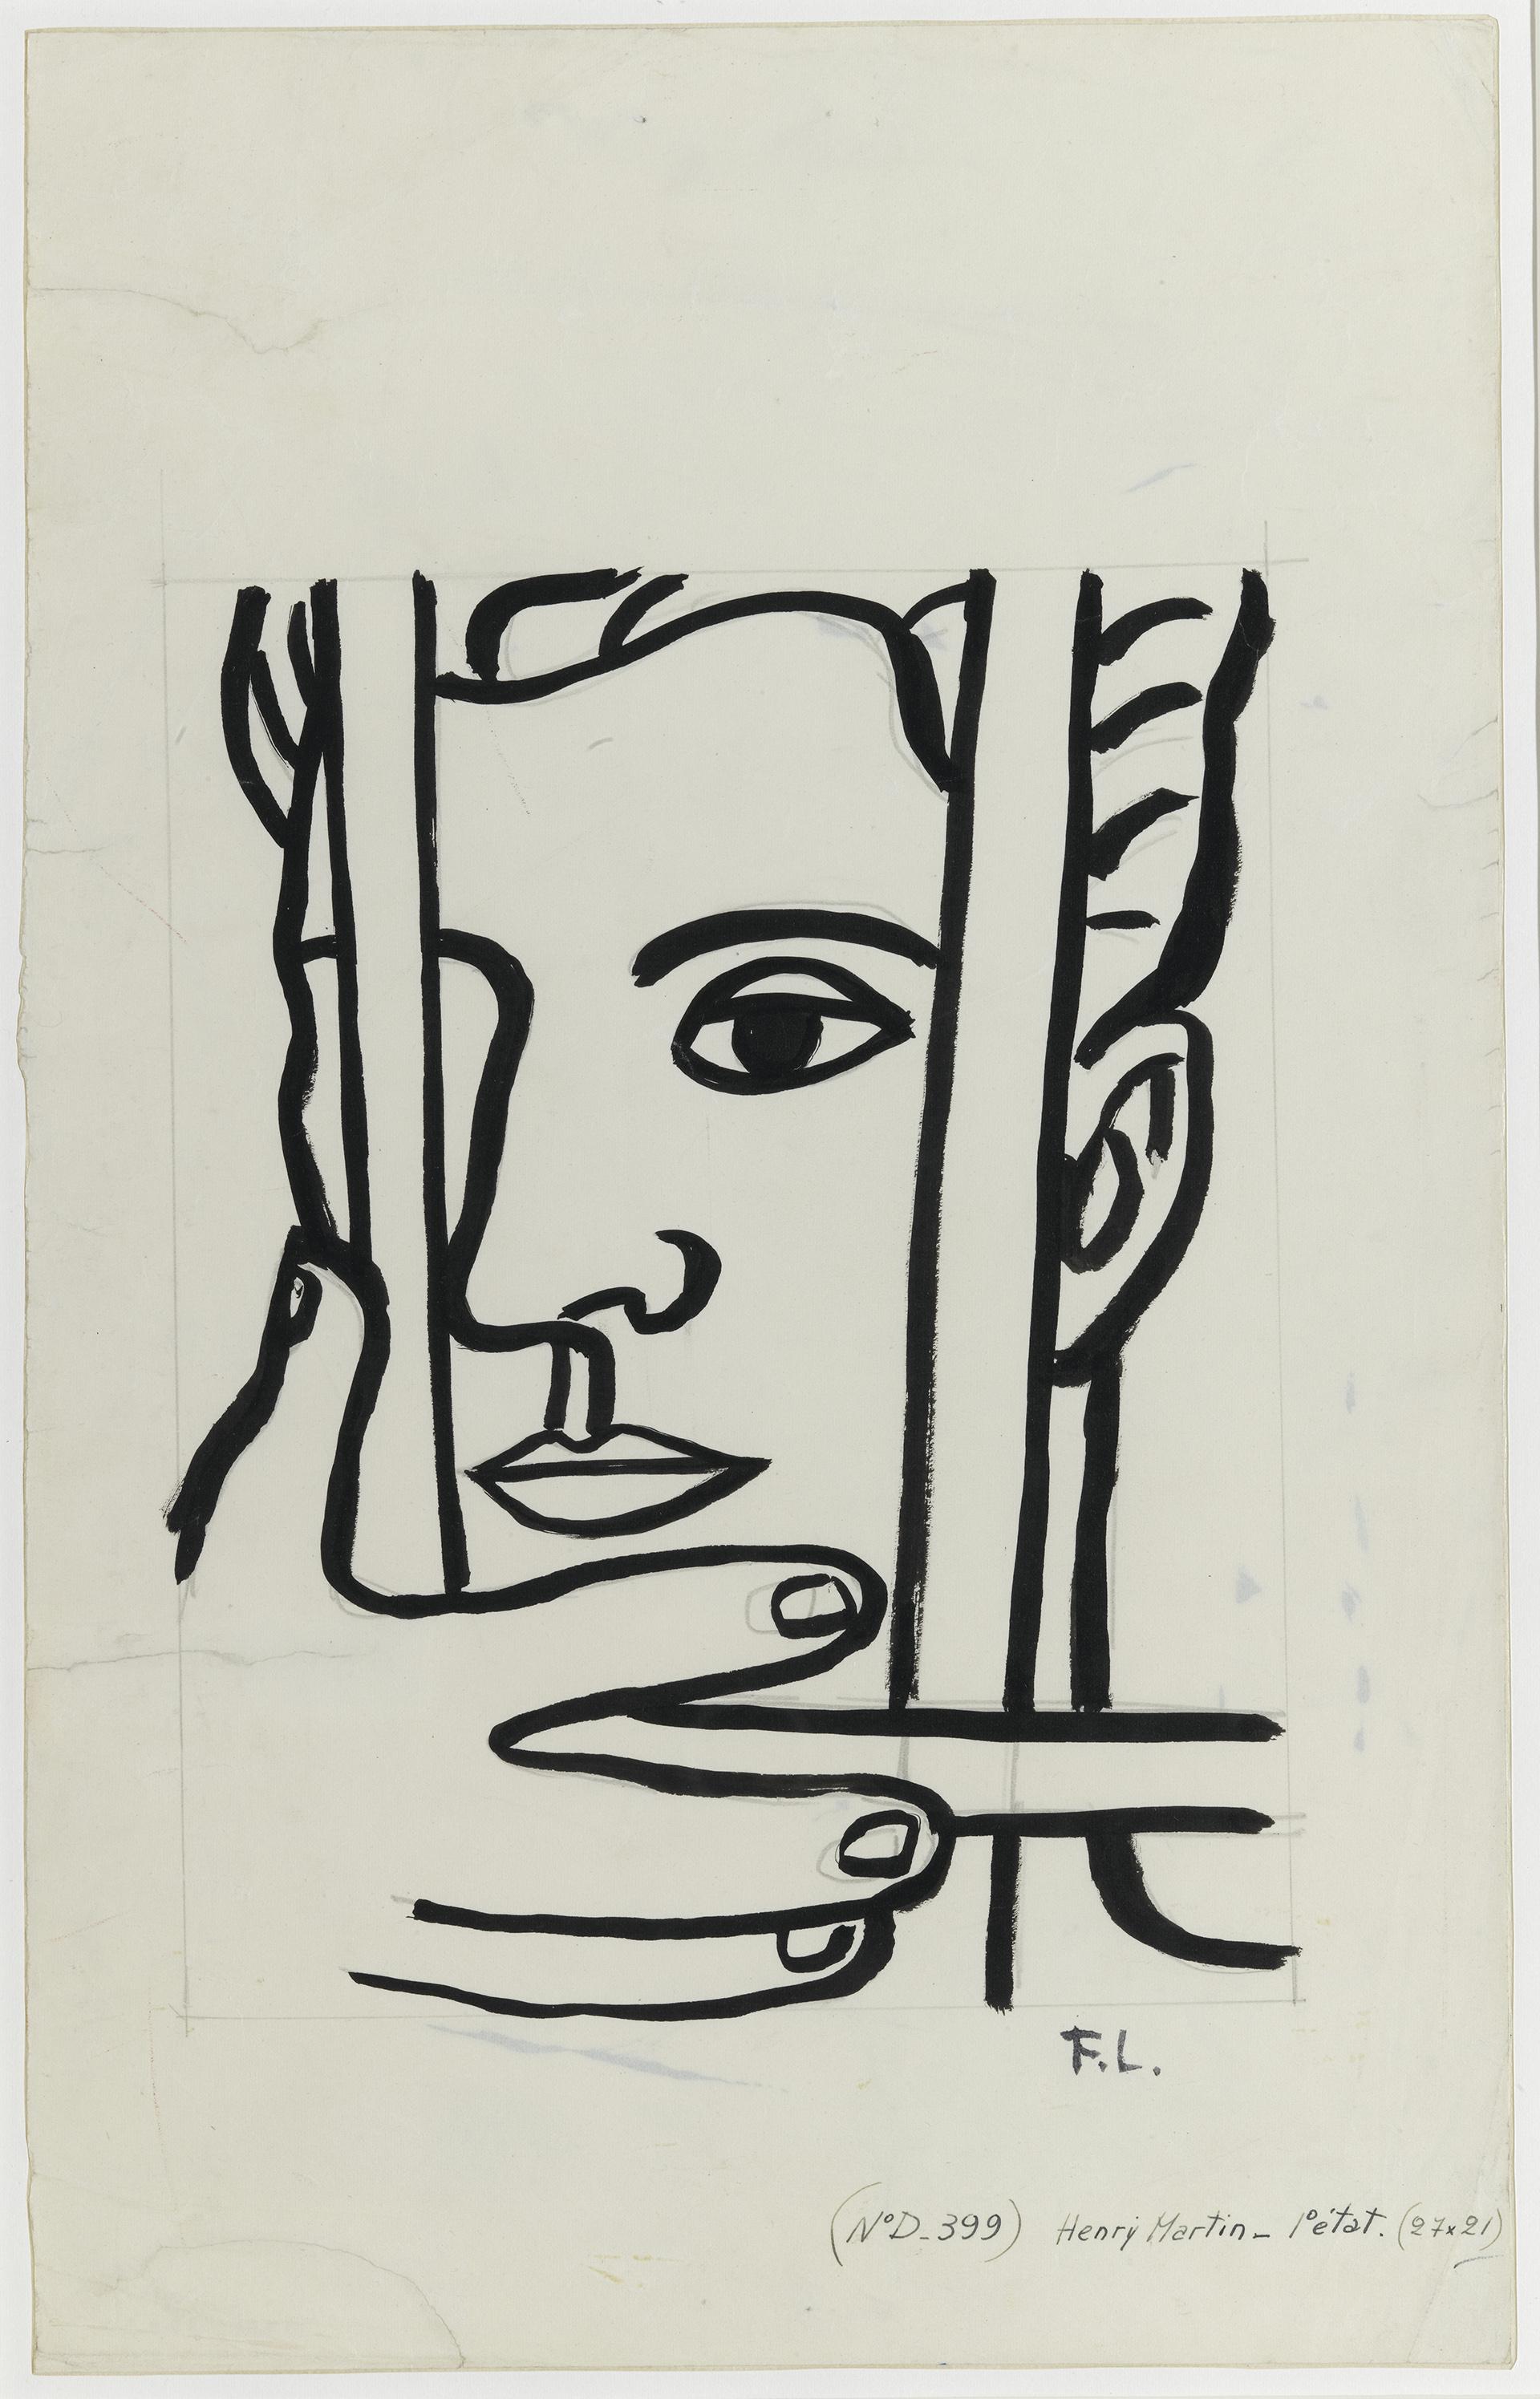  Fernand Léger, Portrait d’Henri Martin (détail), vers 1952, musée national Fernand Léger, donation Nadia Léger et Georges Bauquier (1969). Photo Gérard Blot ©ADAGP, Paris, 2019.